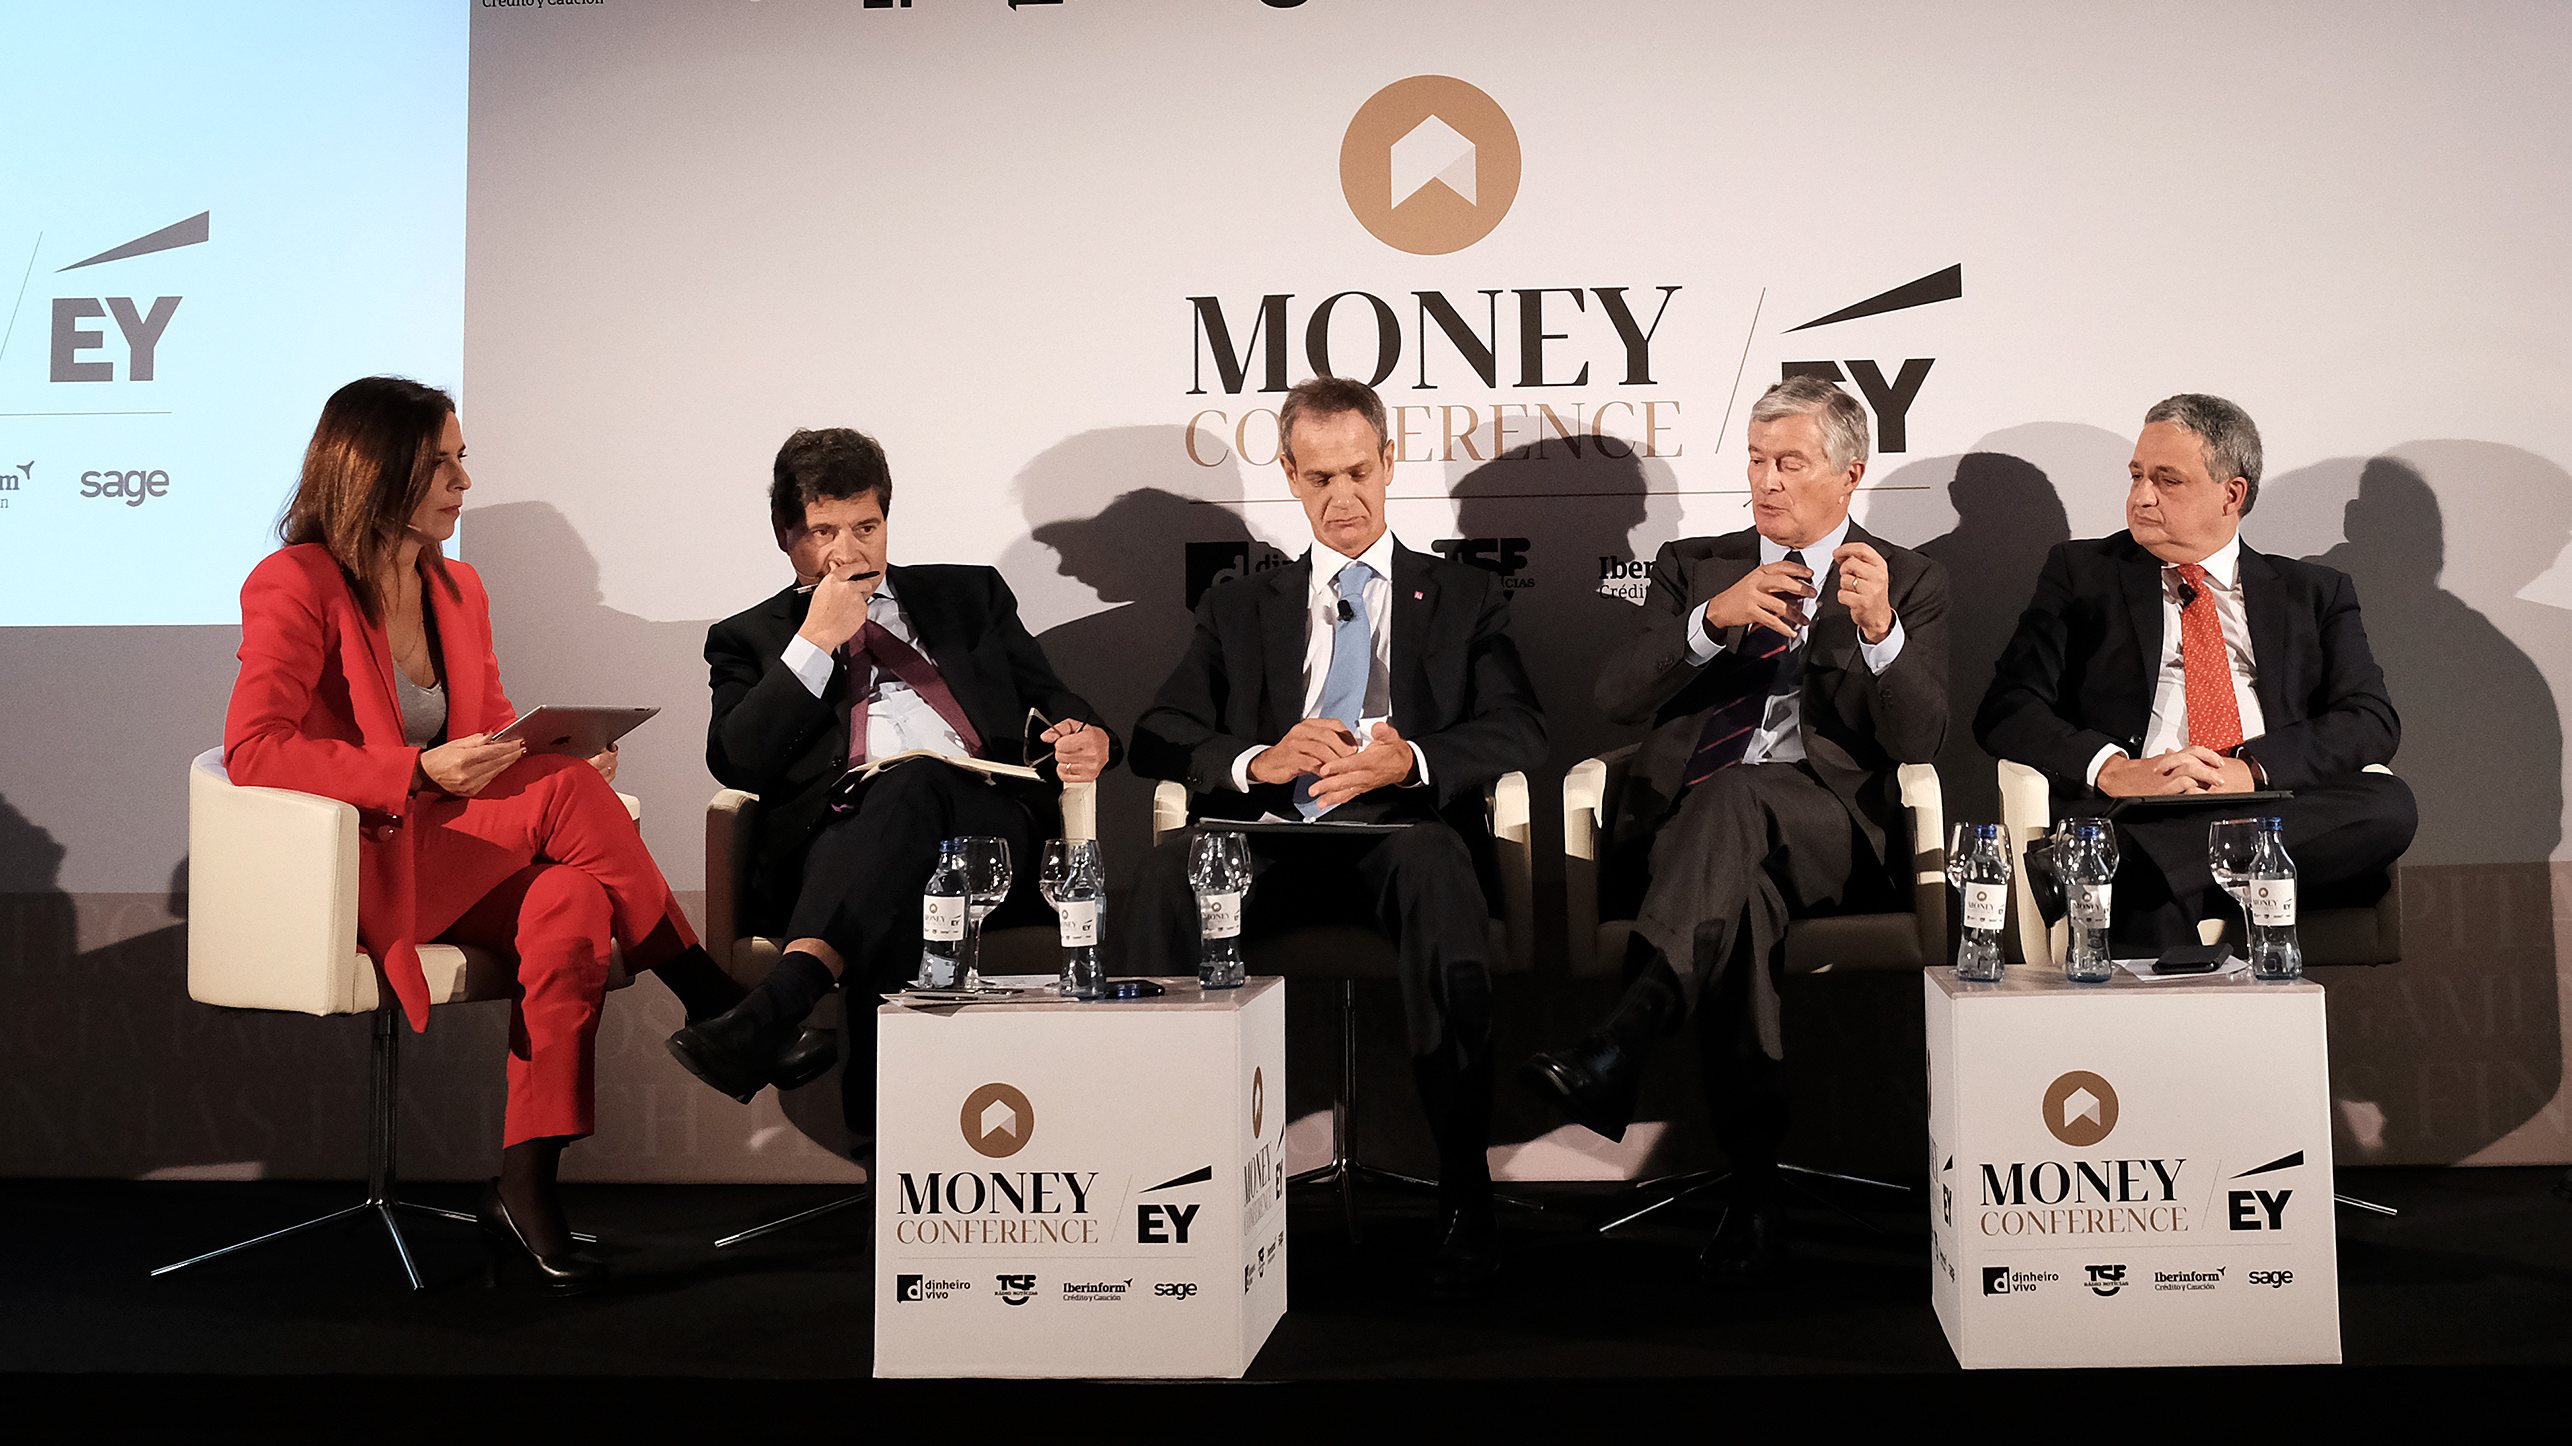 Banqueiros reunidos numa edição anterior da MoneyConference. António Ramalho, Miguel Maya, Paulo Macedo participaram (Francisco Barbeira representou BPI).